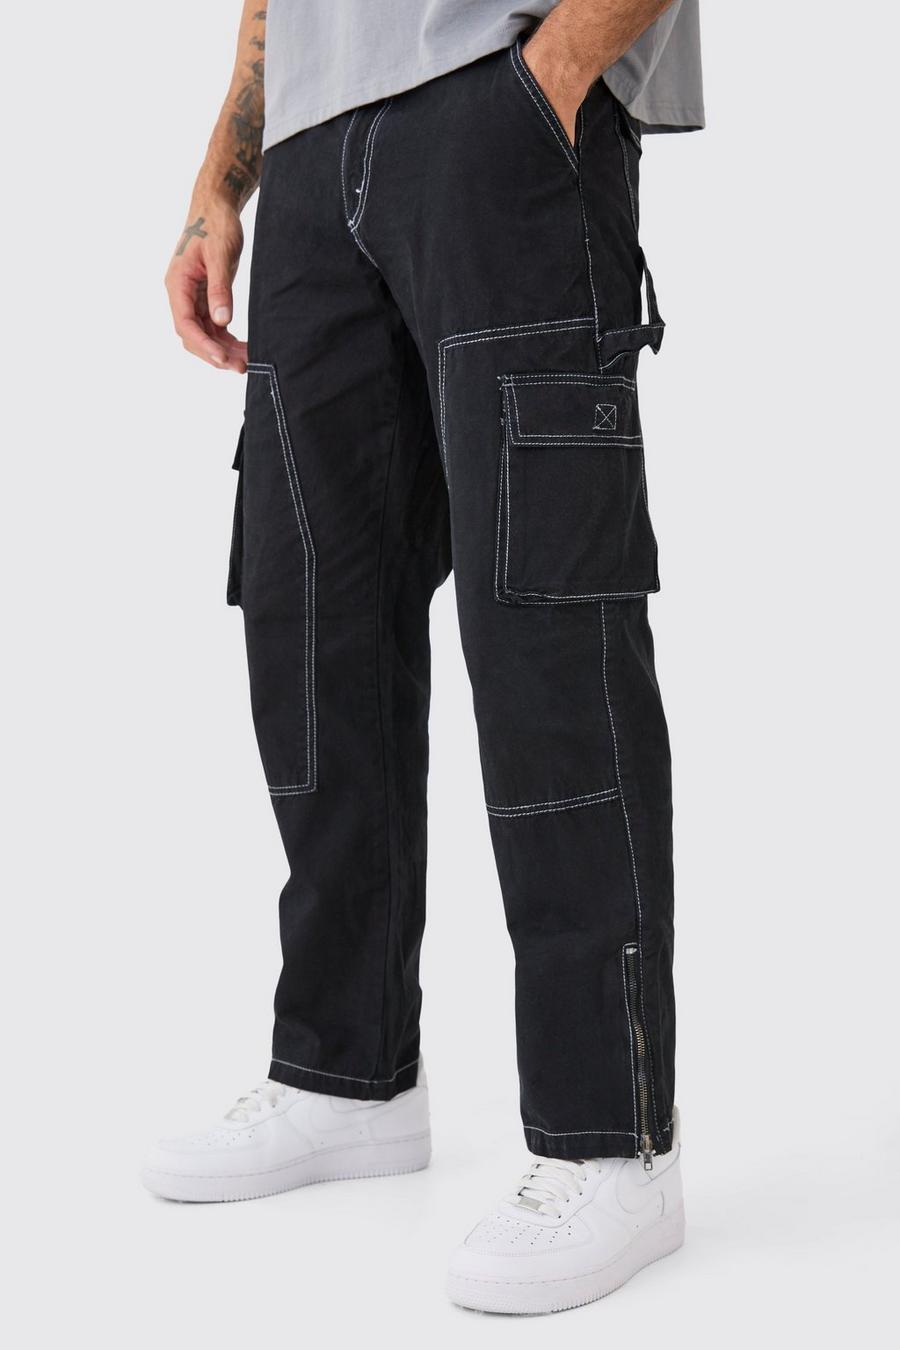 Lockere Hose mit Reißverschluss und Kontrast-Naht, Black